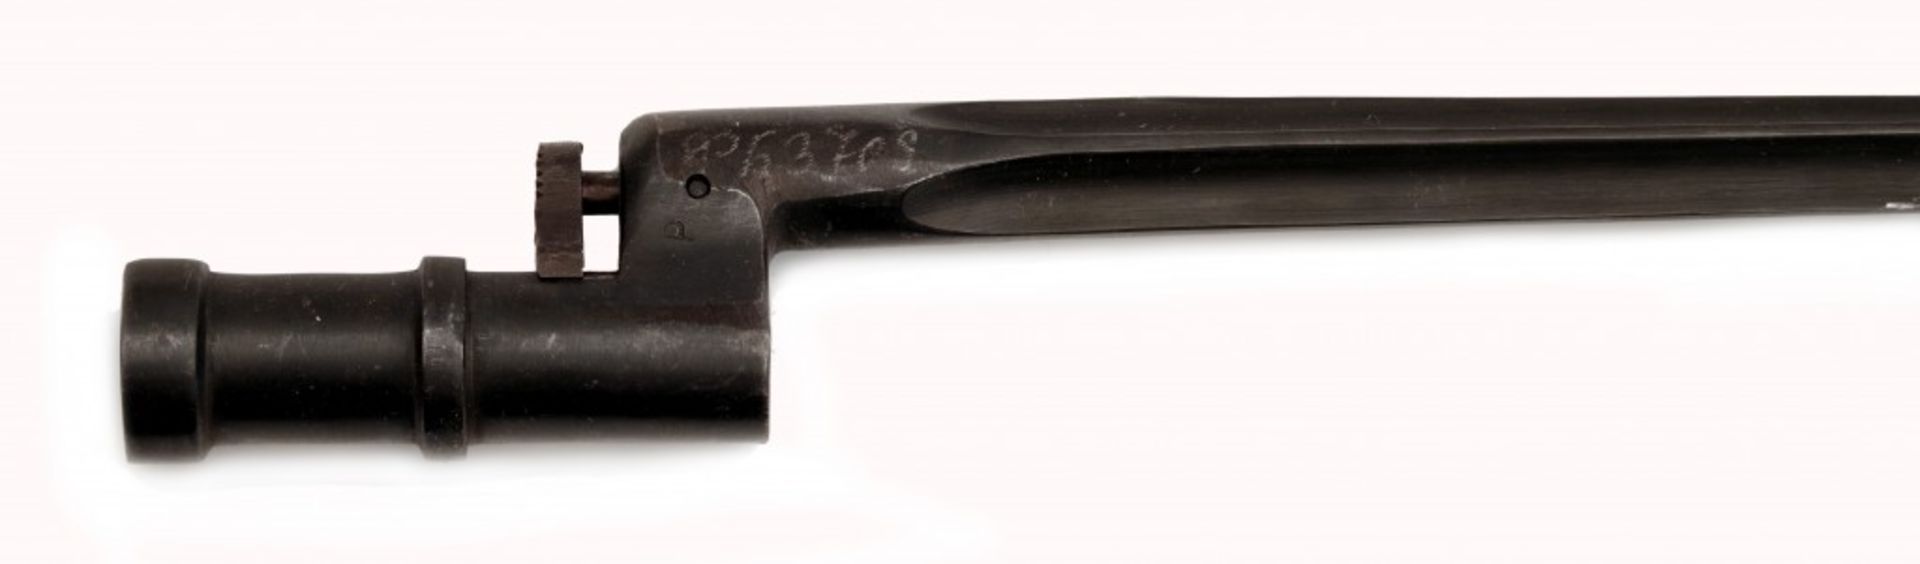 Zwei Bajonette für Mosin-Nagant-Gewehr Modelle 1891/30 und 1891 - Bild 2 aus 4